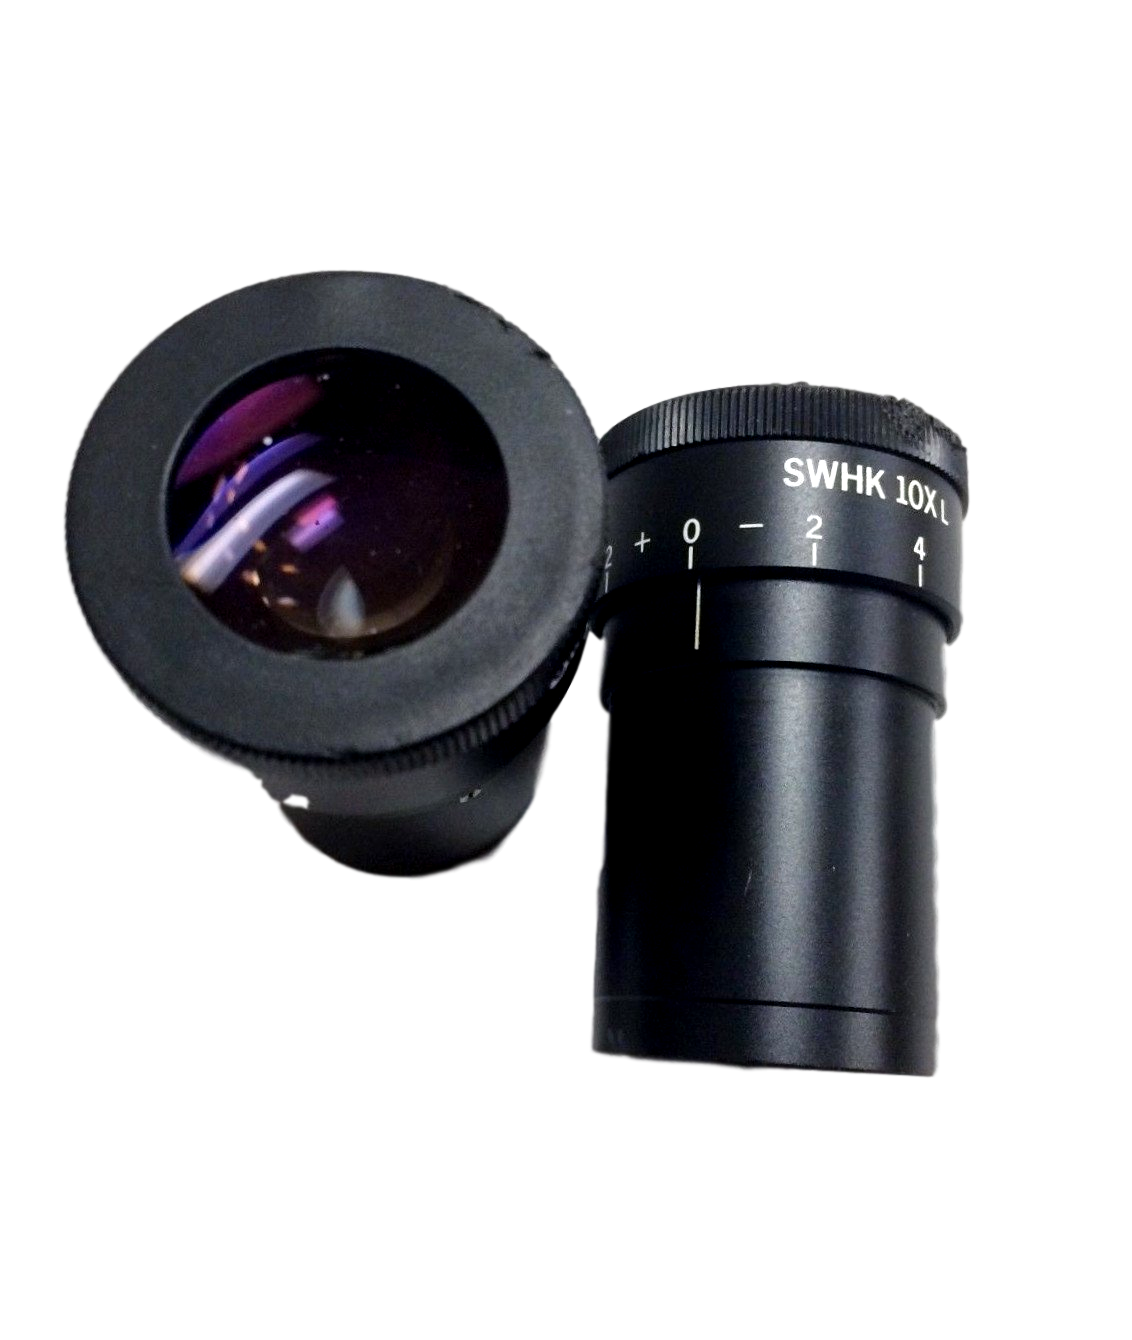 Olympus Super Widefield Trinocular Microscope Head For BH-2 Series w/ Eyepieces